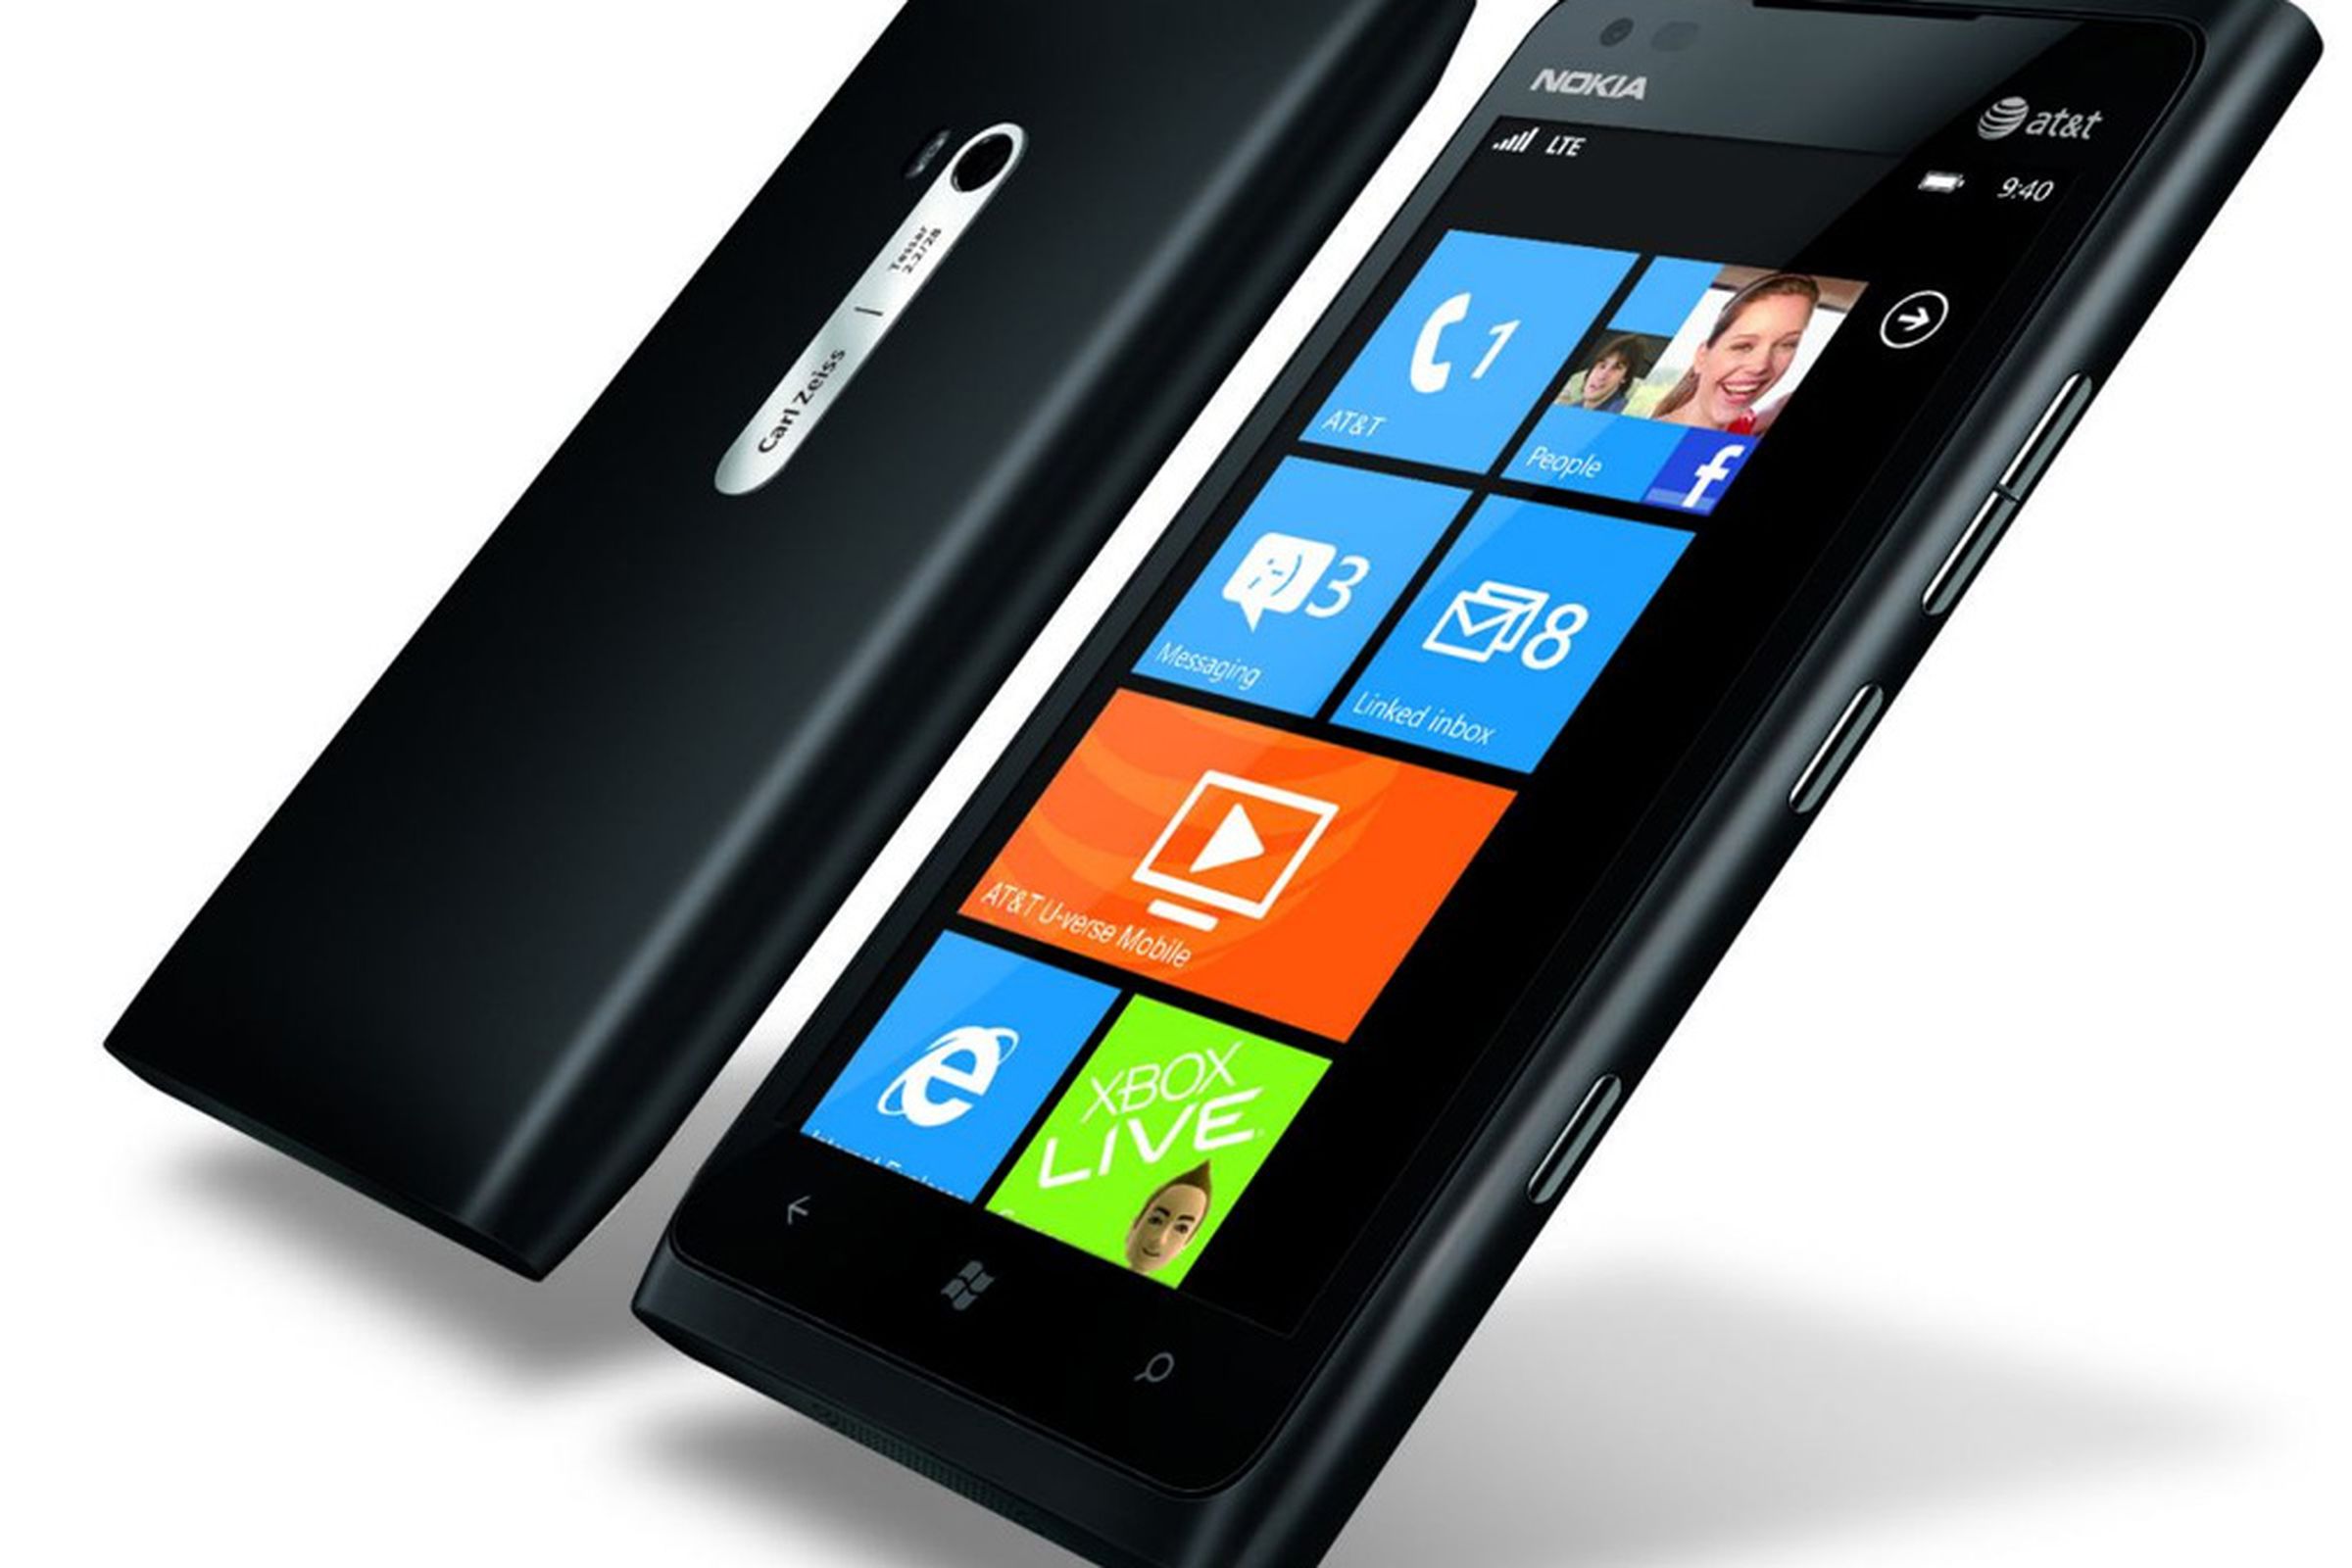 Nokia Lumia 900 official black